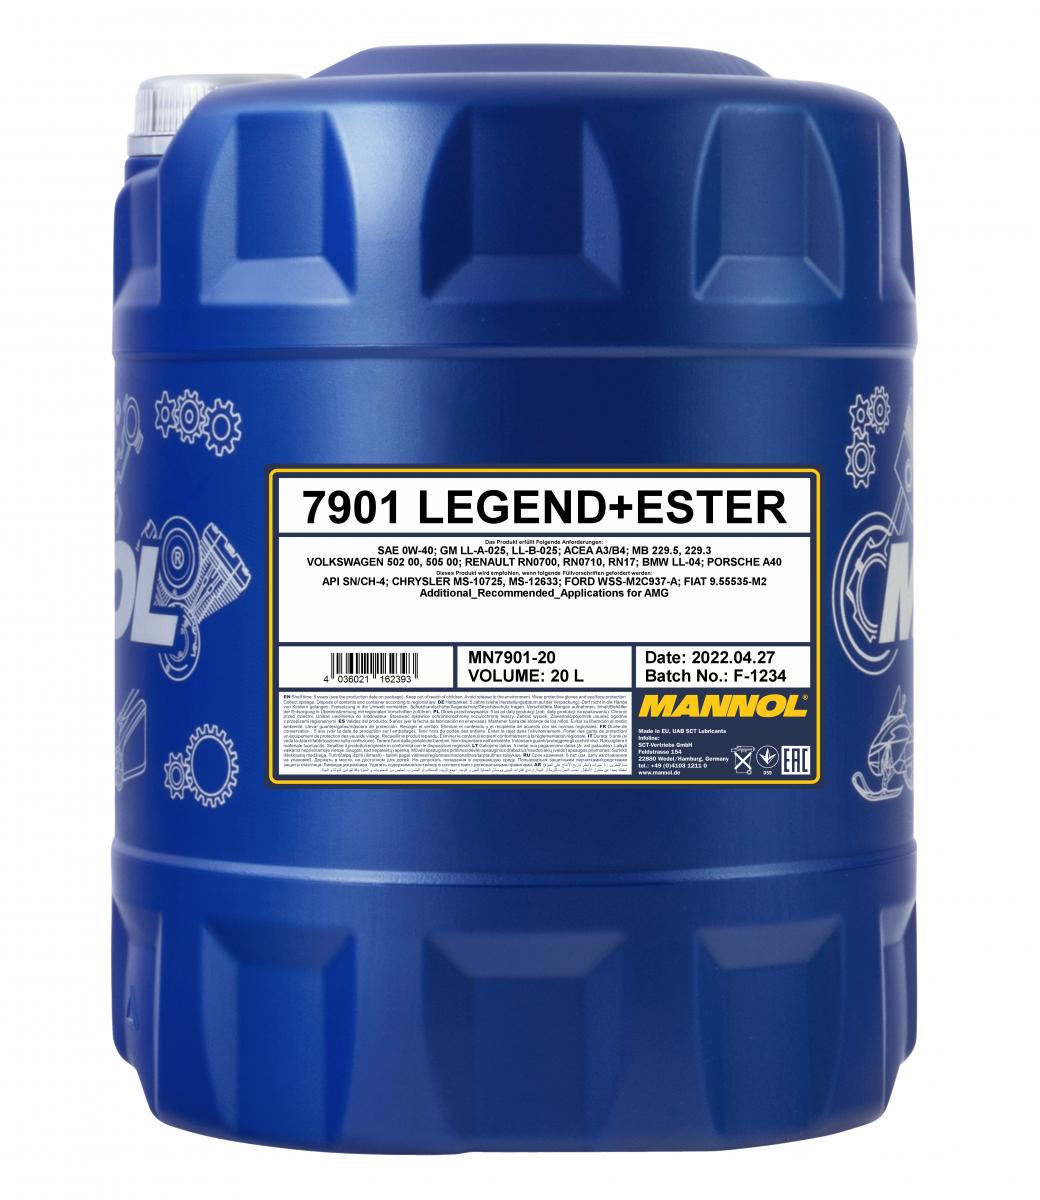 40 Liter (2x20) MANNOL Legend Ester 0W-40 7901 SN/CH-4 Motoröl + 1x Ablasshahn